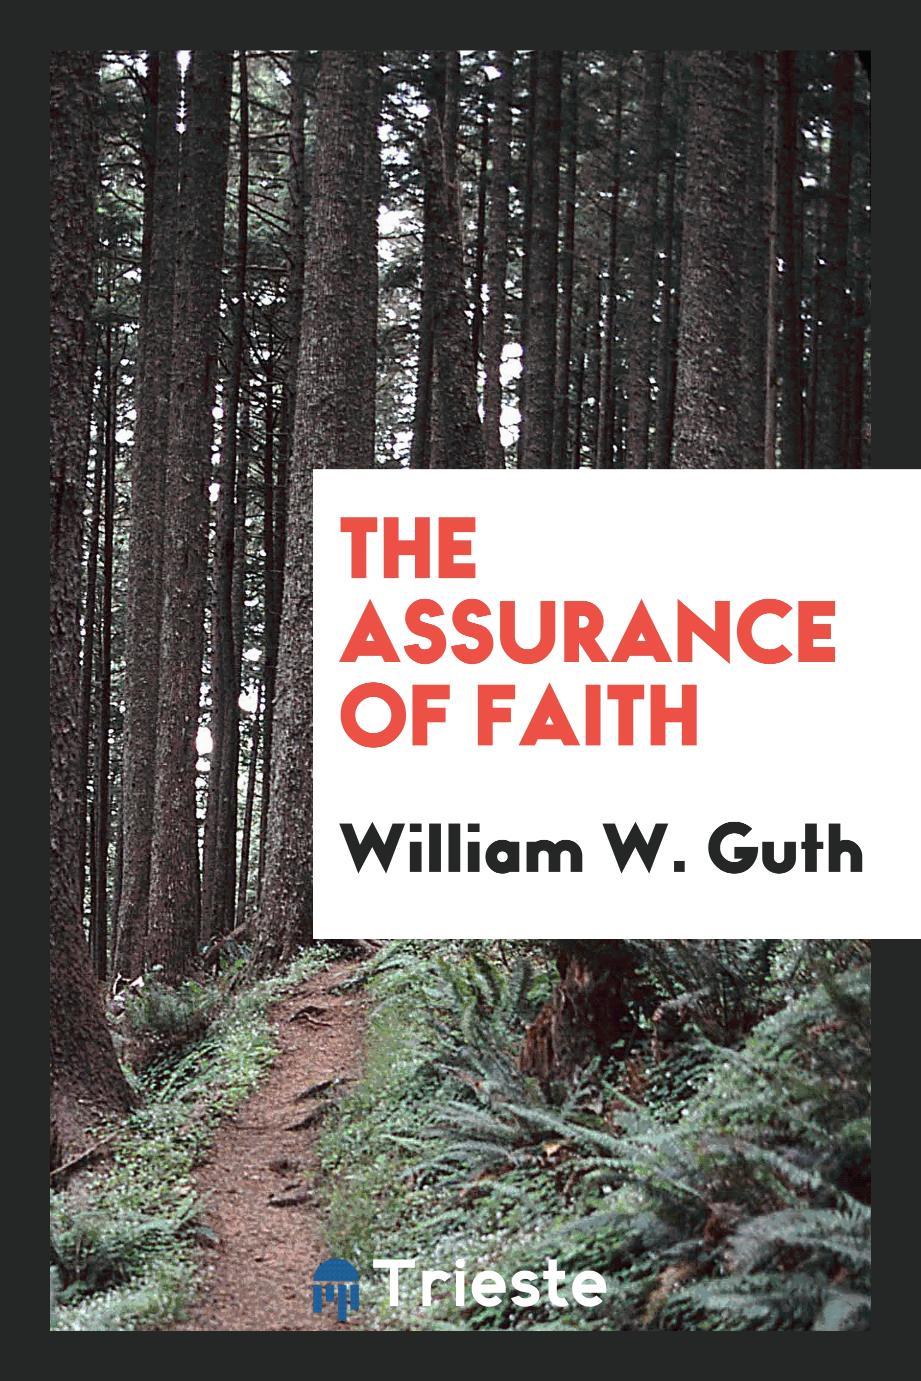 The Assurance of Faith